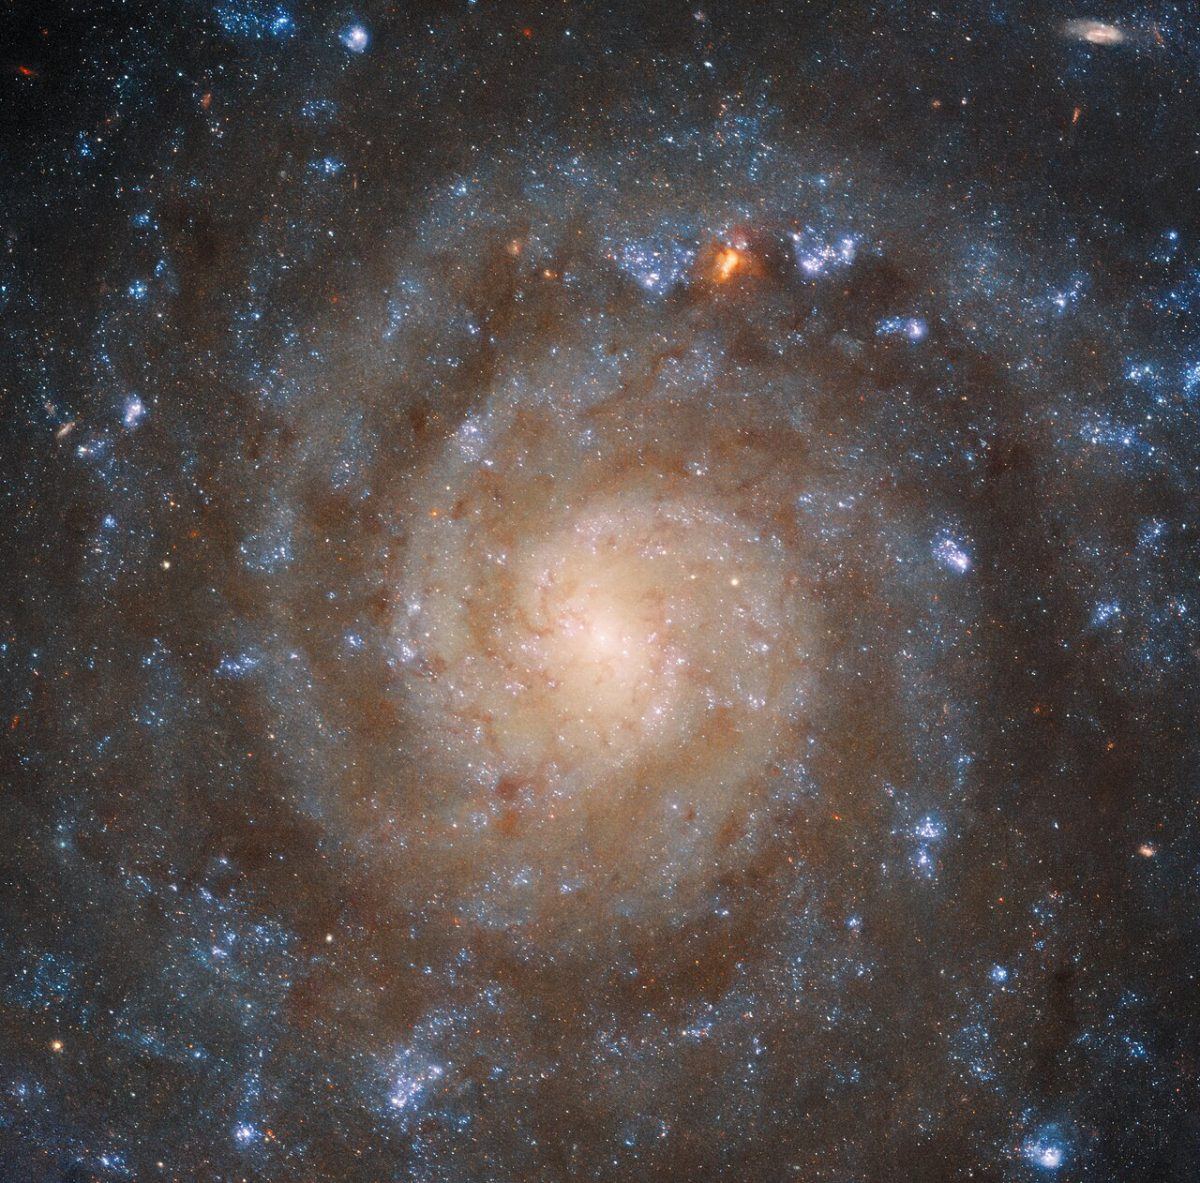 Una imagen de una galaxia espiral con un centro brillante y brazos espirales polvorientos visibles en la imagen.  Tomada por el Telescopio Espacial Hubble.